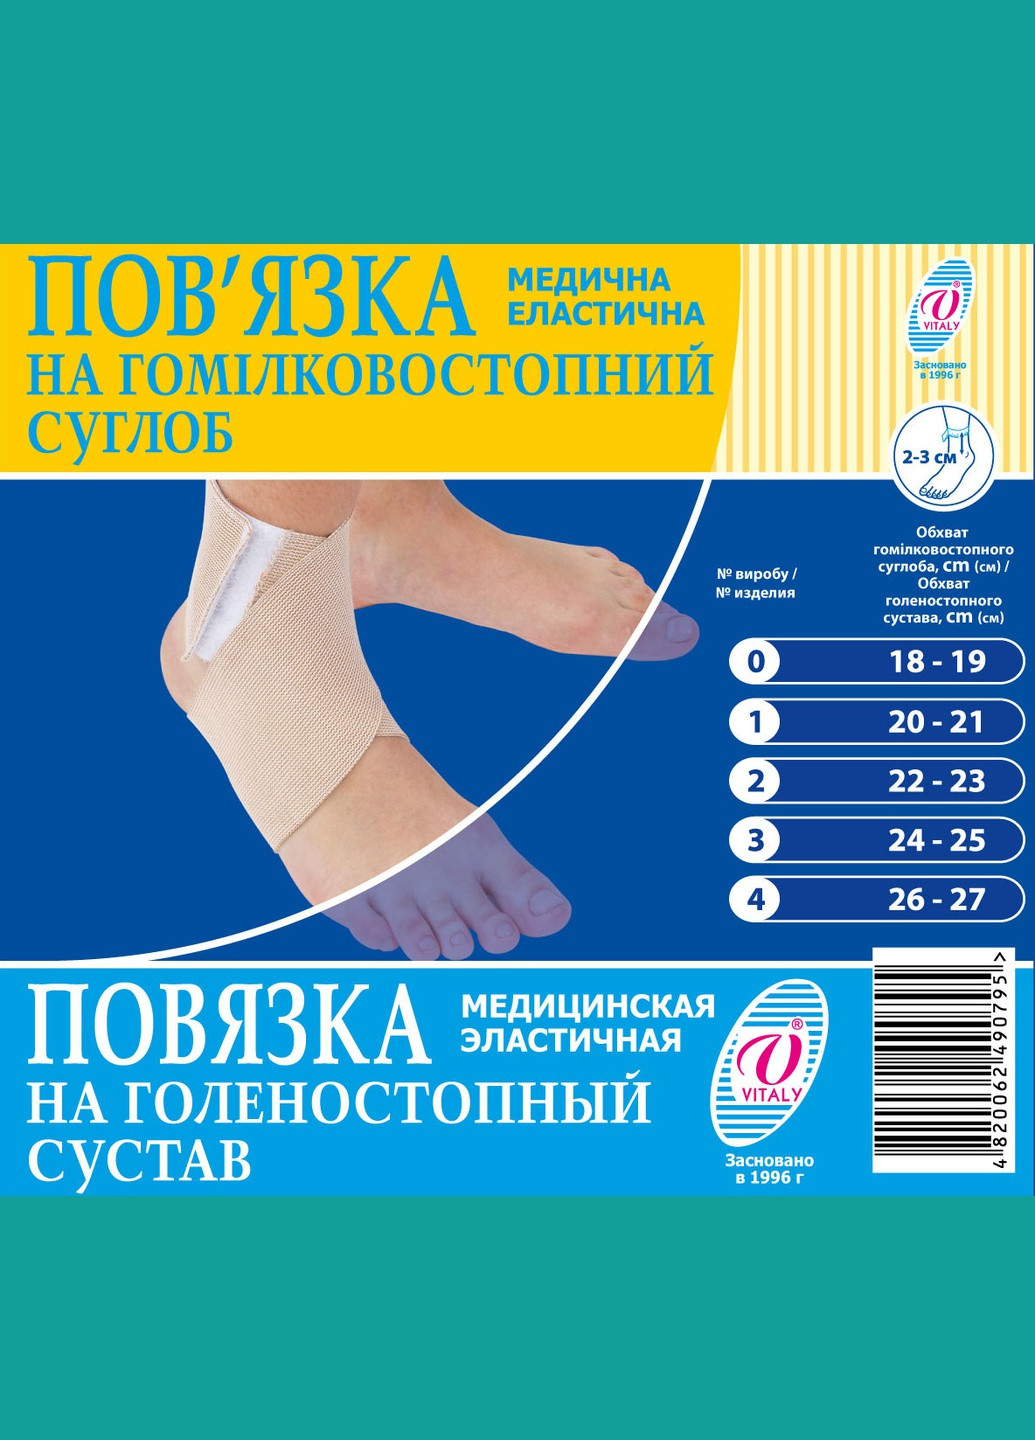 Бандаж на голеностопный сустав, повязка медицинская эластичная фиксатор голеностопного сустава ВIТАЛI размер №0 (2917) Віталі (264208303)